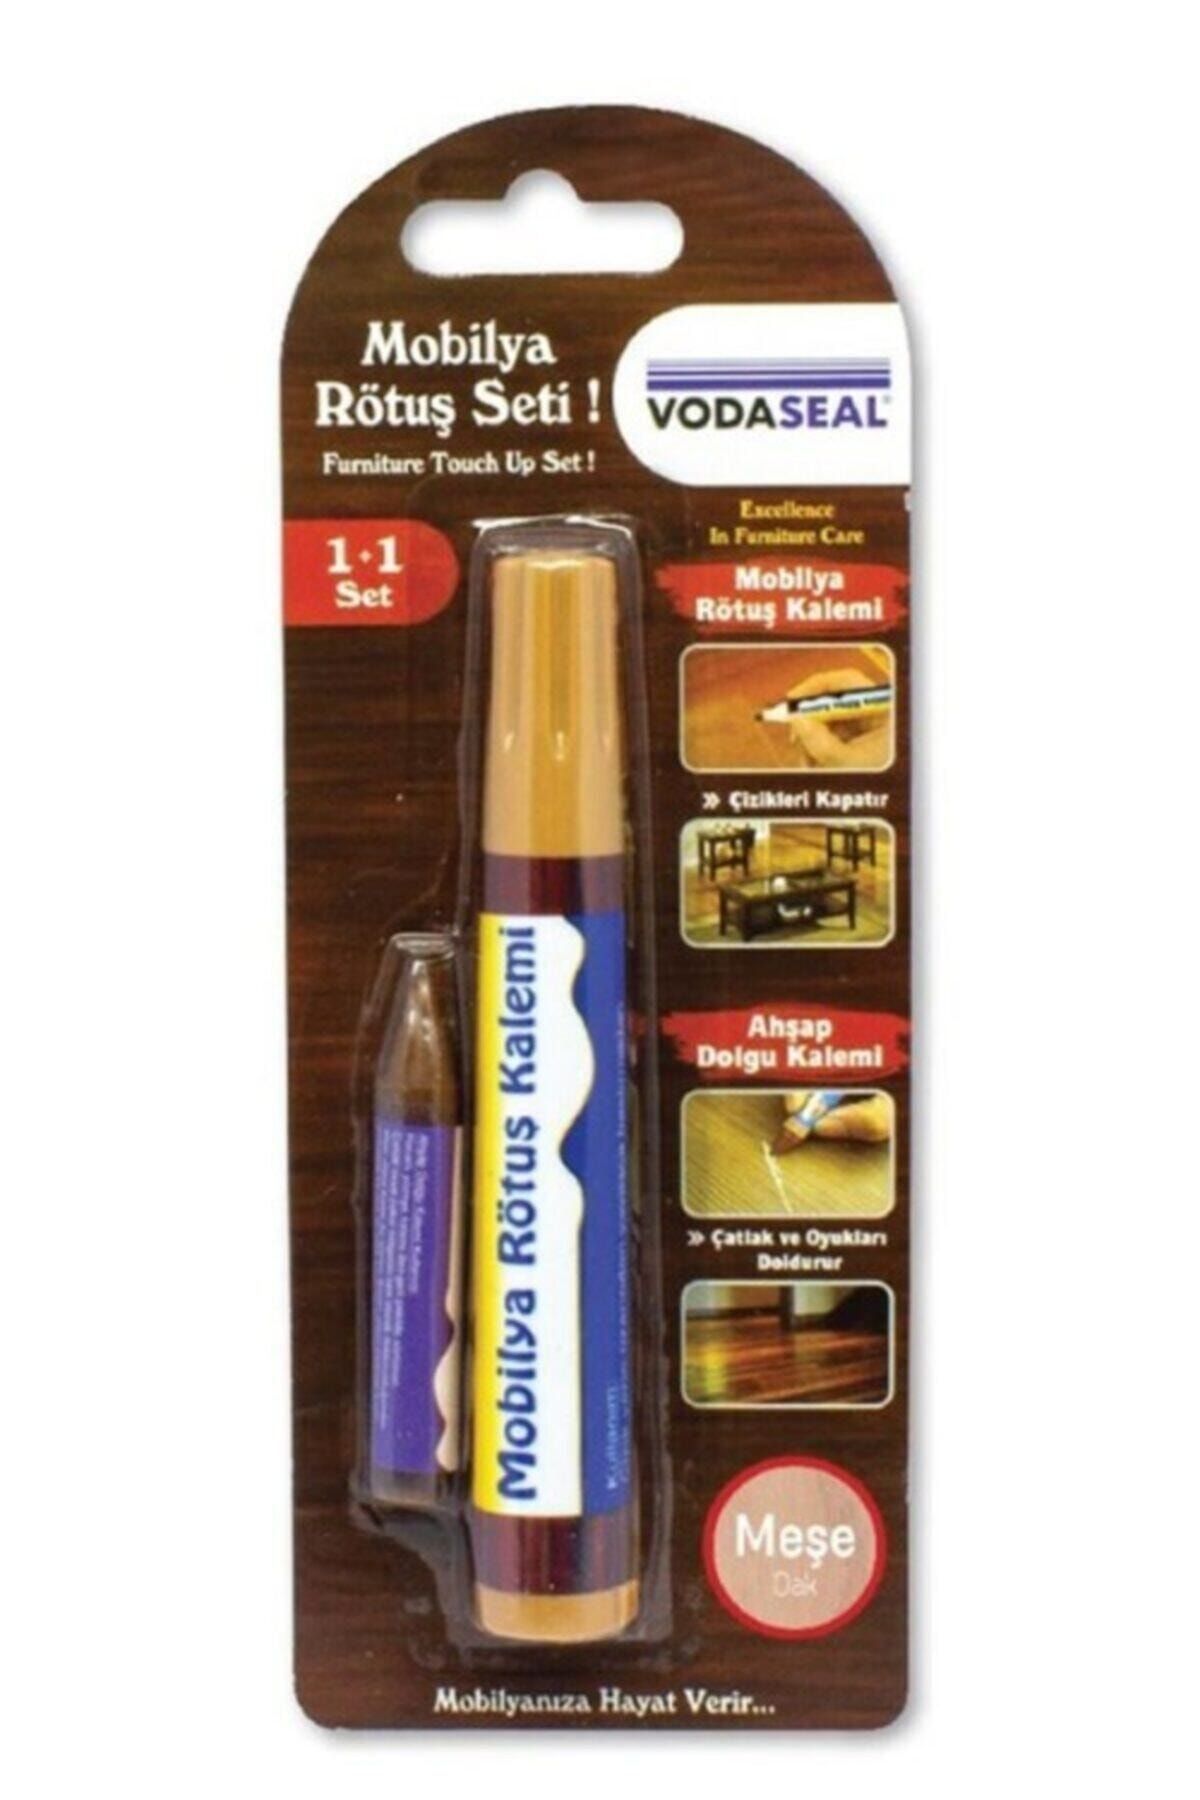 Vodaseal Mobilya Rötuş Seti Ahşap Dolgu Kalemi Çizik Çatlak Kapatıcı Kalem Meşe